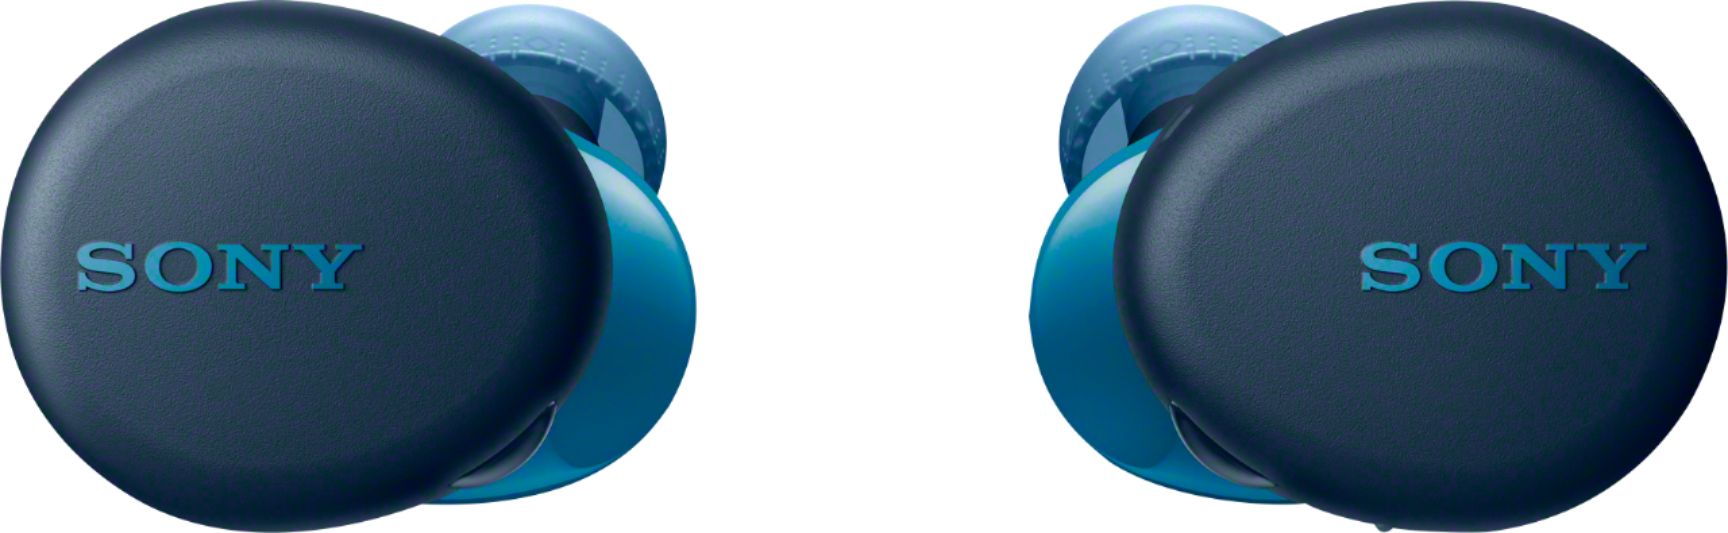 Left View: JBL - LIVE 300TWS True Wireless In-Ear Headphones - Blue